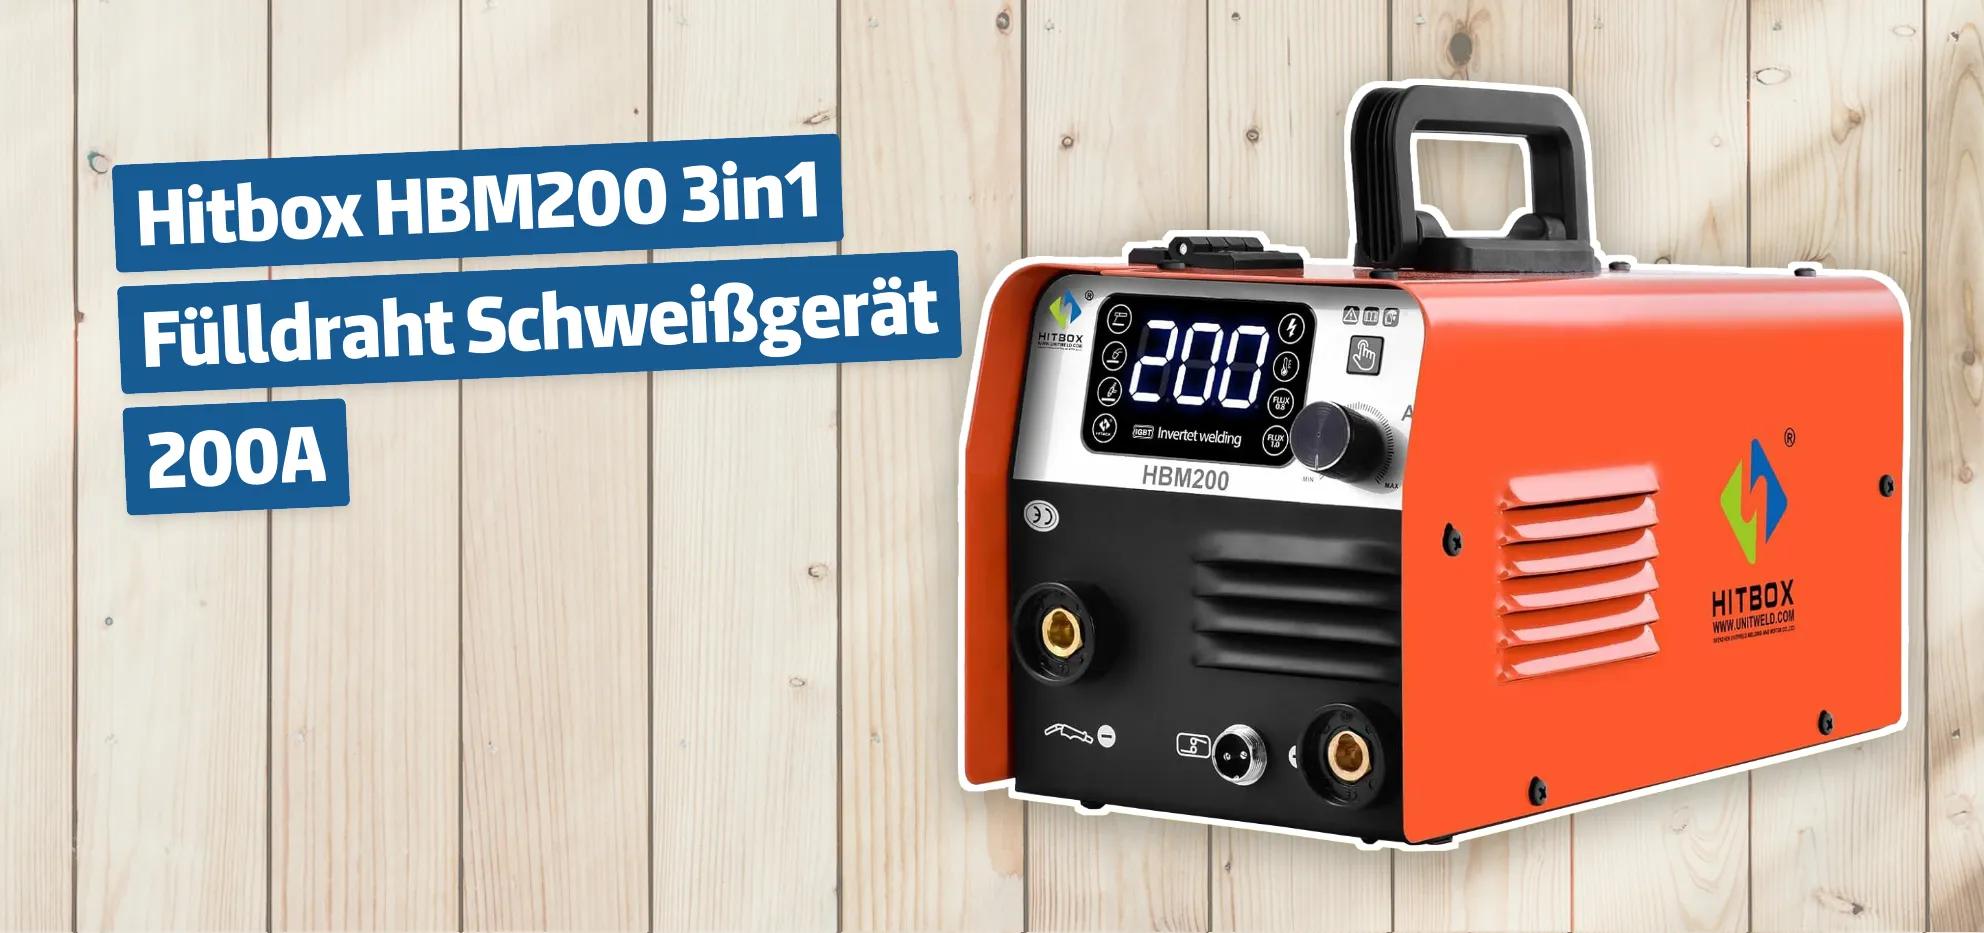 Hitbox HBM200 3in1 Fülldraht Schweißgerät 200A